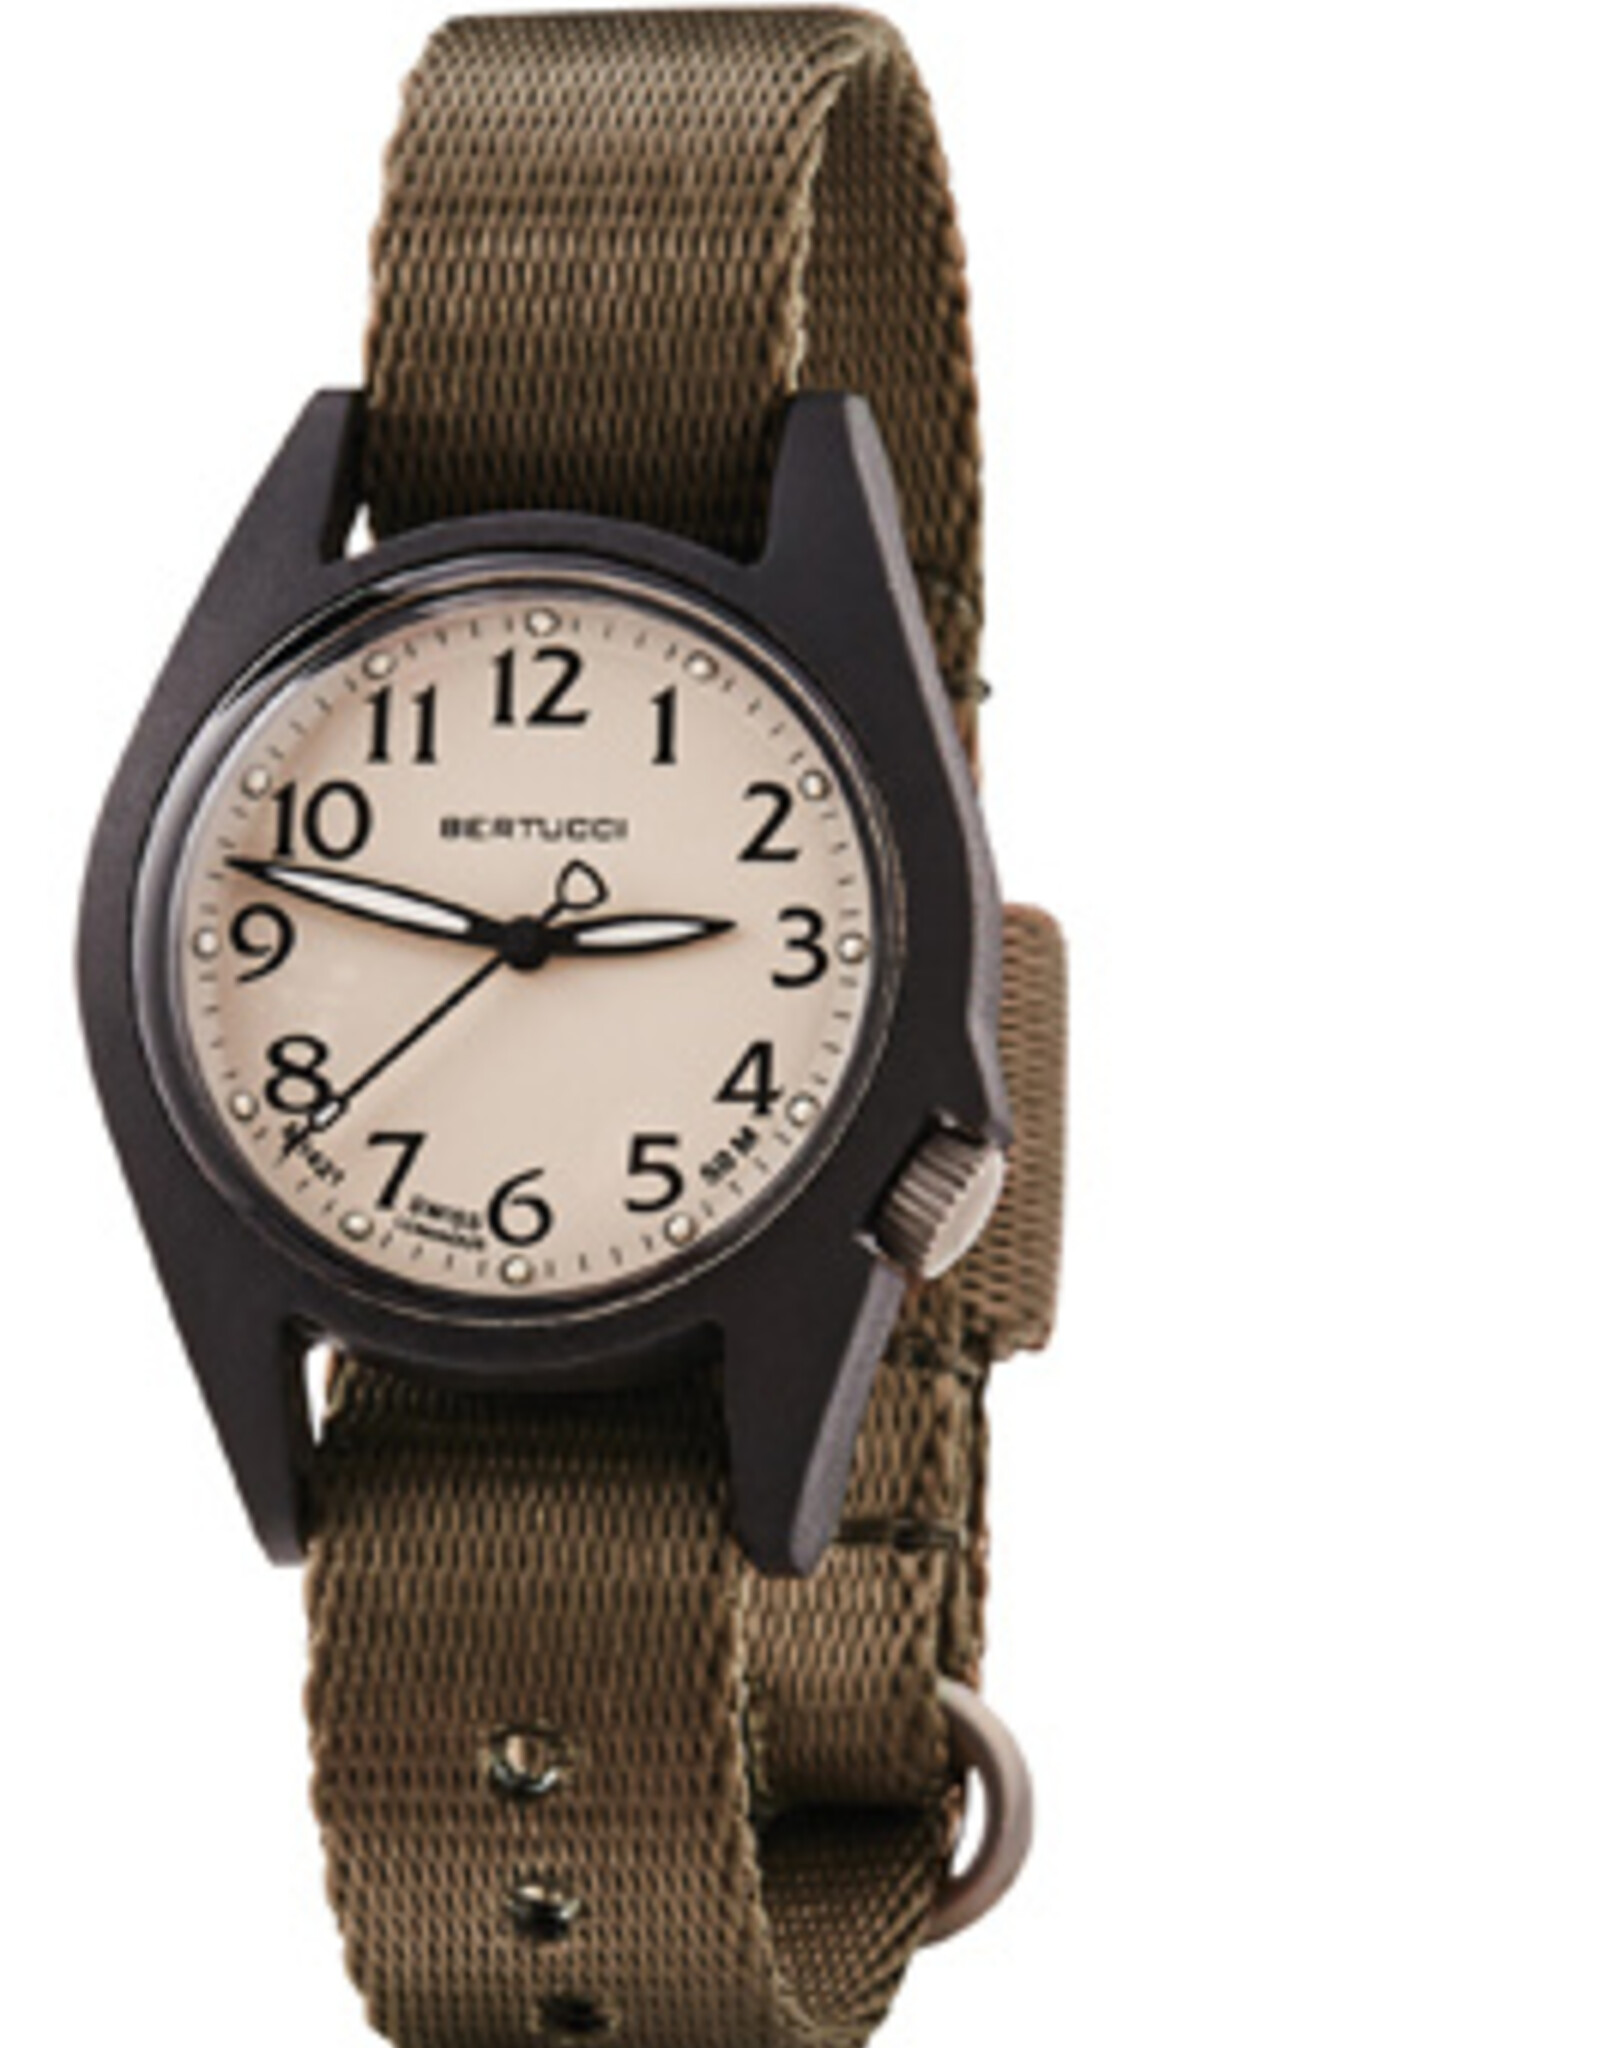 Bertucci Bertucci M-2RA Watch 18503